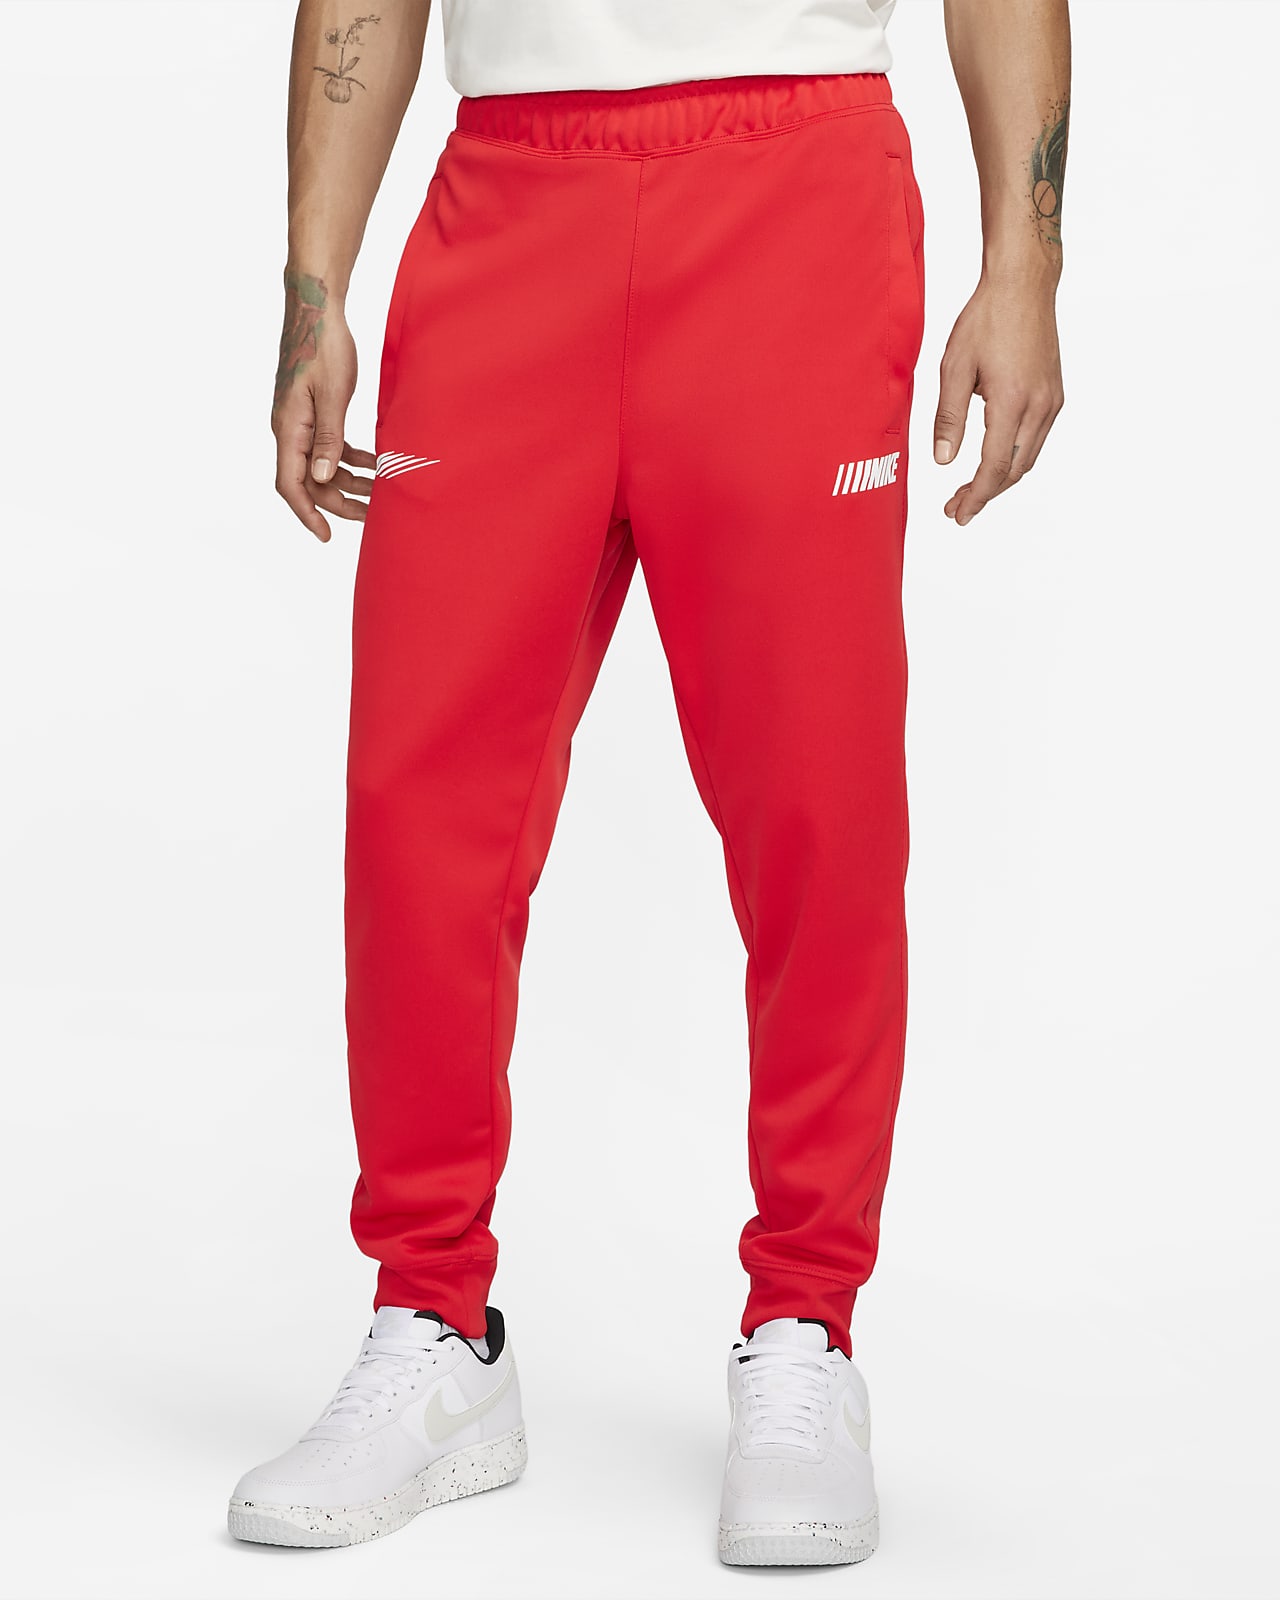 Pantalons de survêtement homme - Nike, Remise jusqu'à 45 %